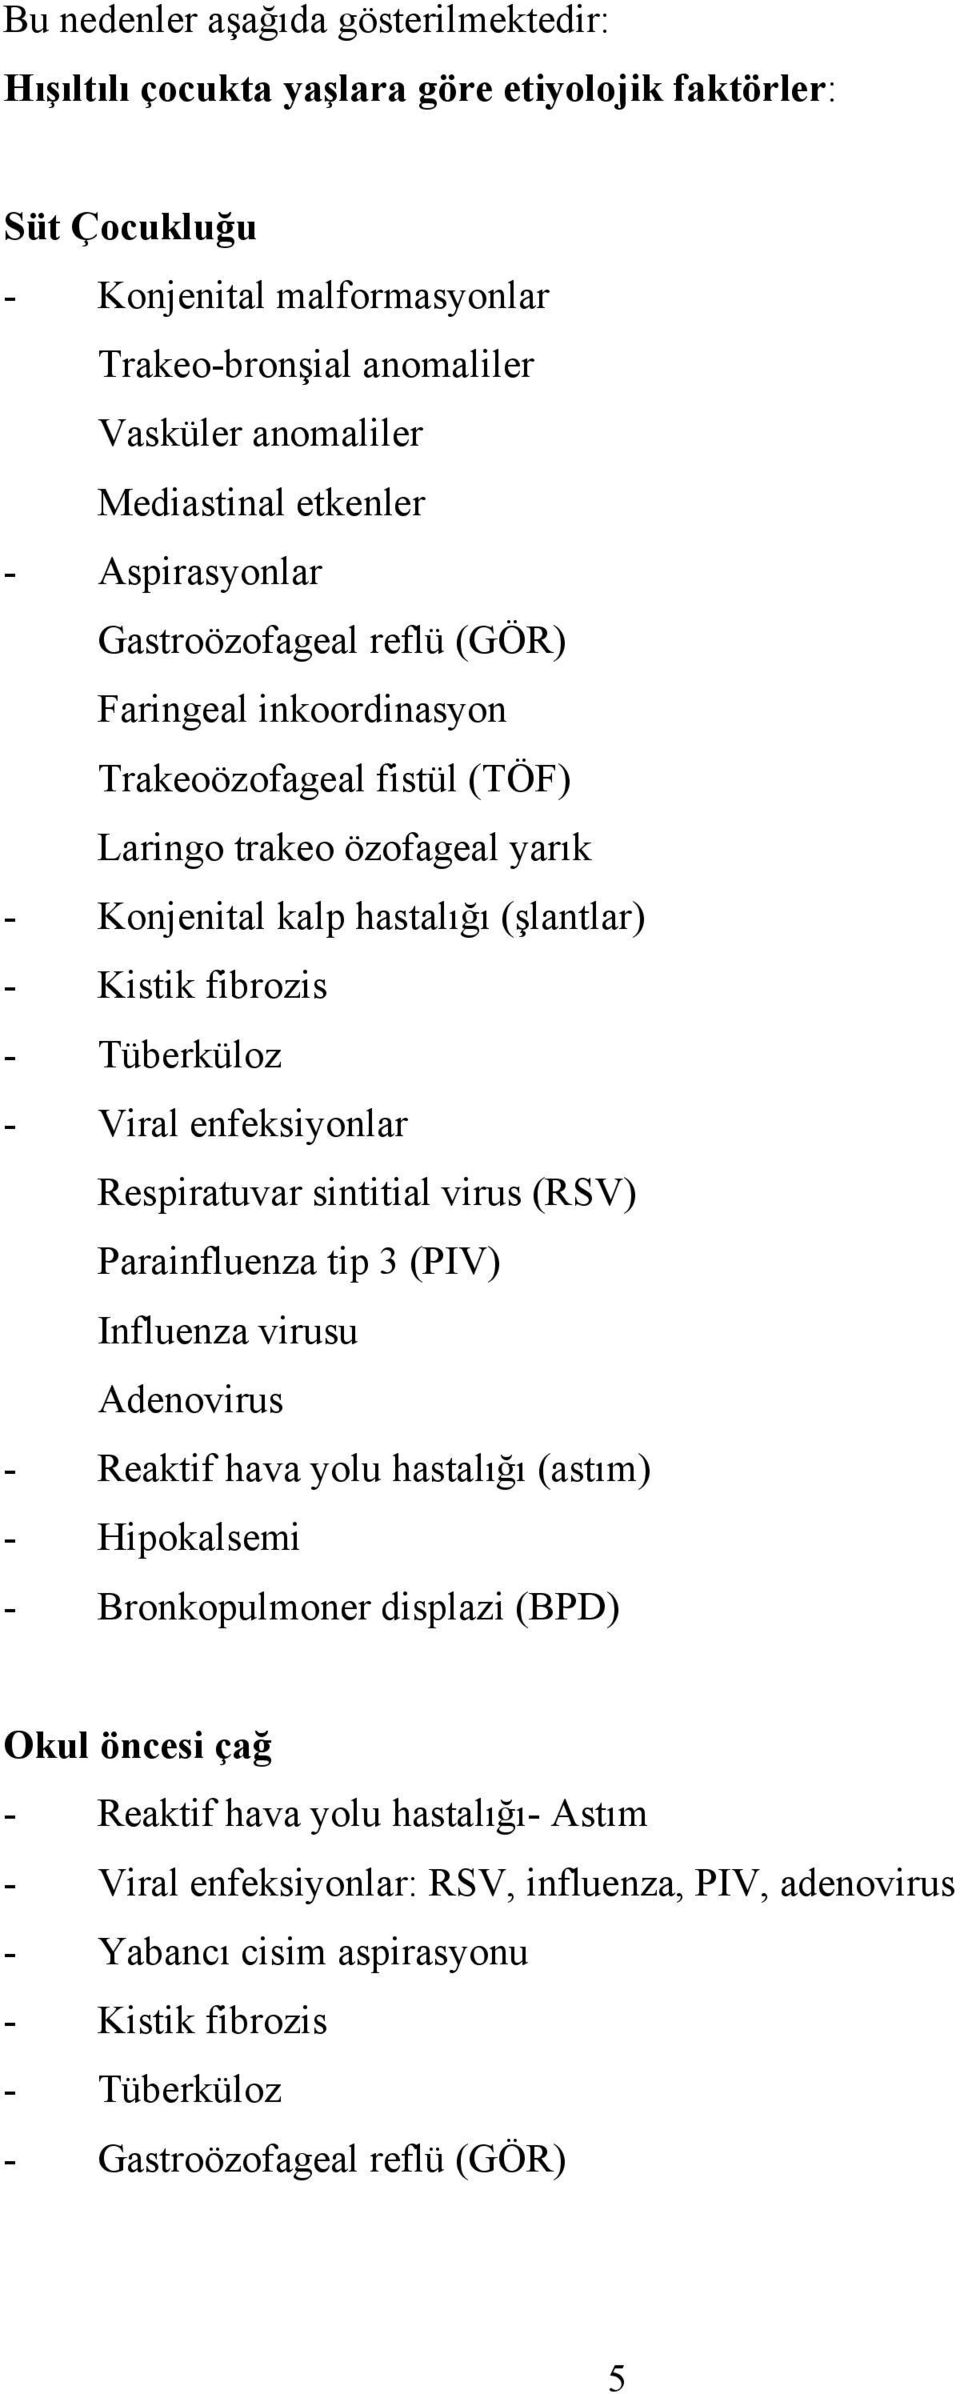 Tüberküloz - Viral enfeksiyonlar Respiratuvar sintitial virus (RSV) Parainfluenza tip 3 (PIV) Influenza virusu Adenovirus - Reaktif hava yolu hastalığı (astım) - Hipokalsemi - Bronkopulmoner